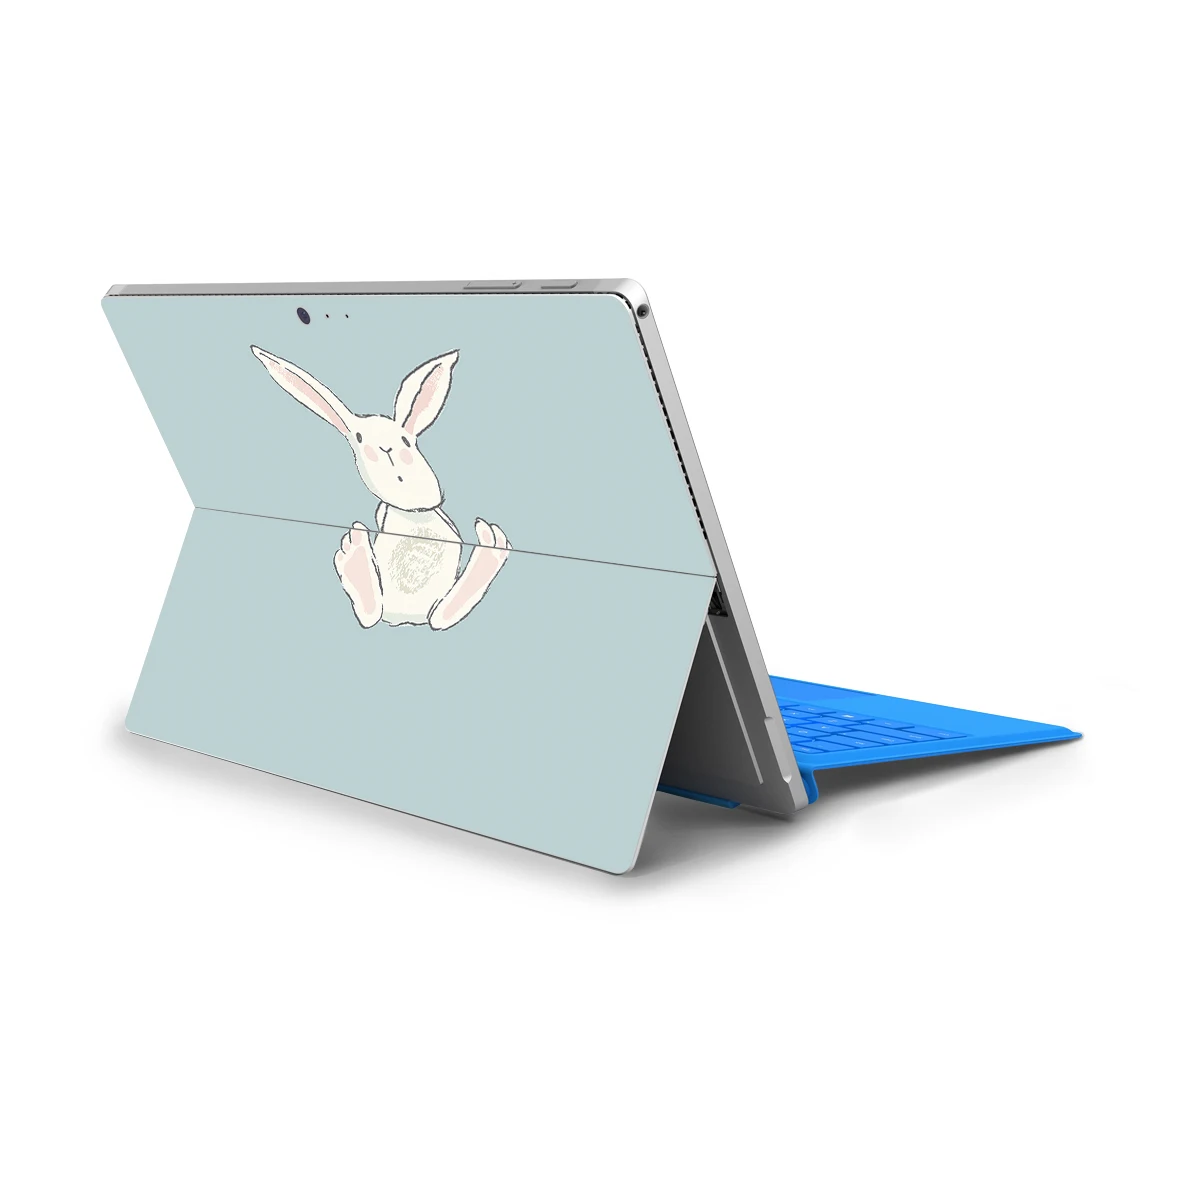 Наклейки для ноутбука microsoft Surface Pro 4 Pro 5 Pro 6 защита от пыли Чехол для ноутбука Surface Pro 4 5 6 наклейка на заднюю панель